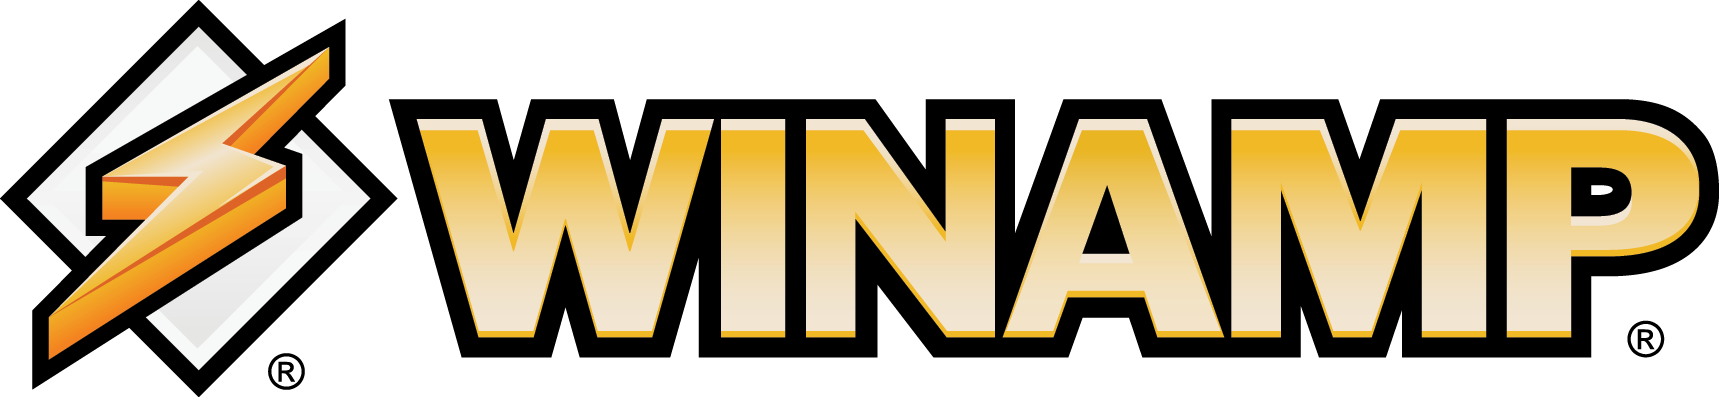 Winamp Logo photo - 1